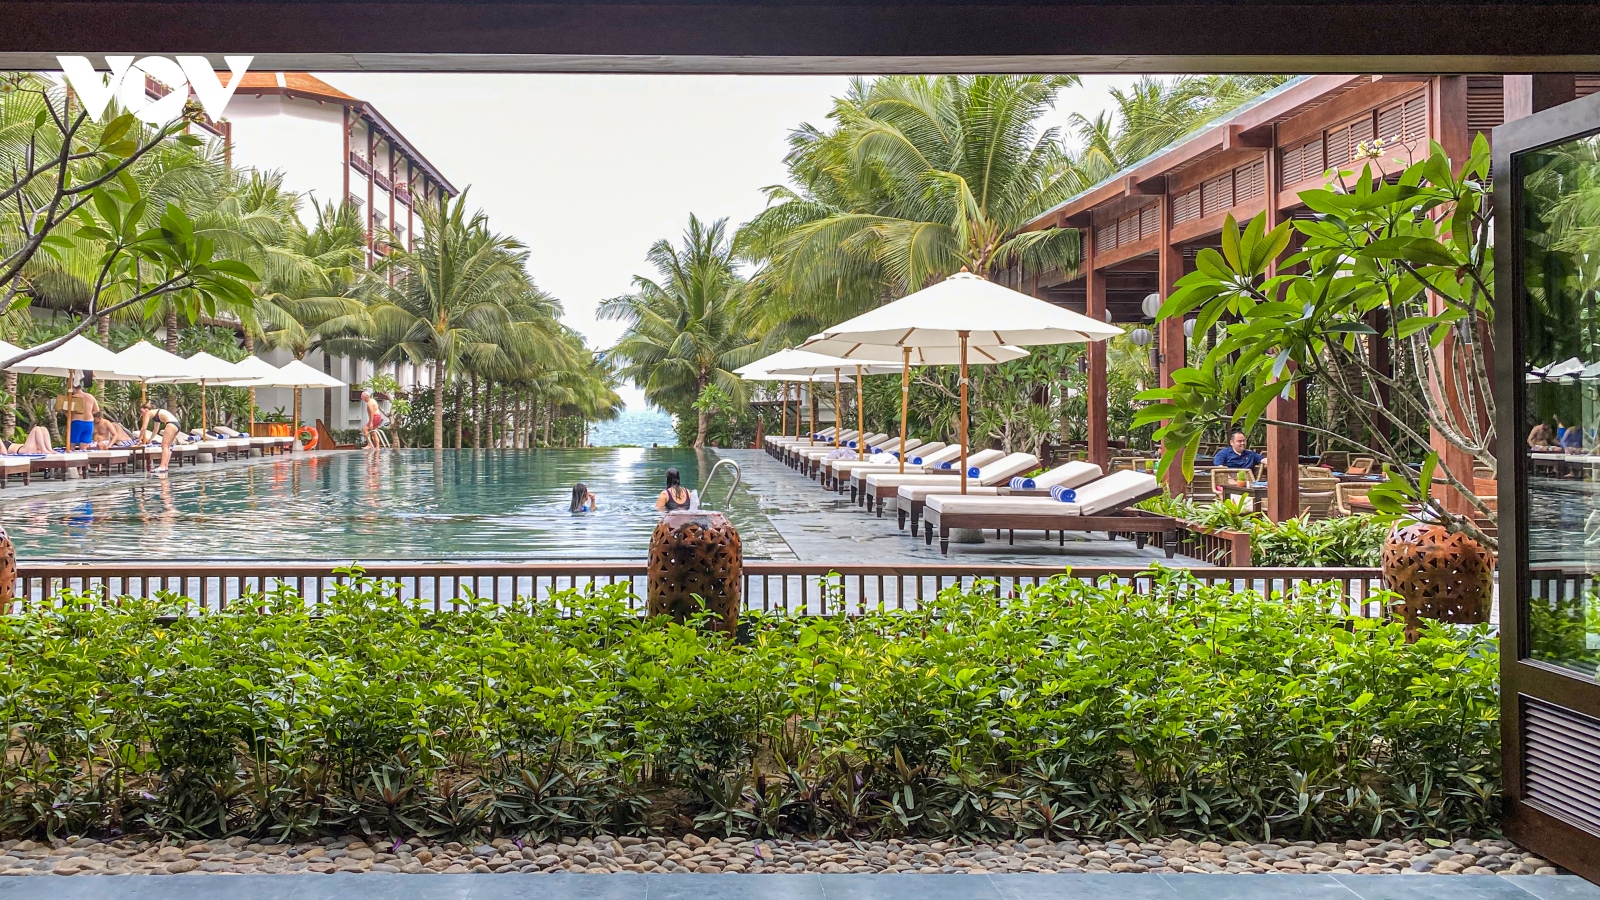 Chuyên trang du lịch Australia khen ngợi resort ở Bình Thuận